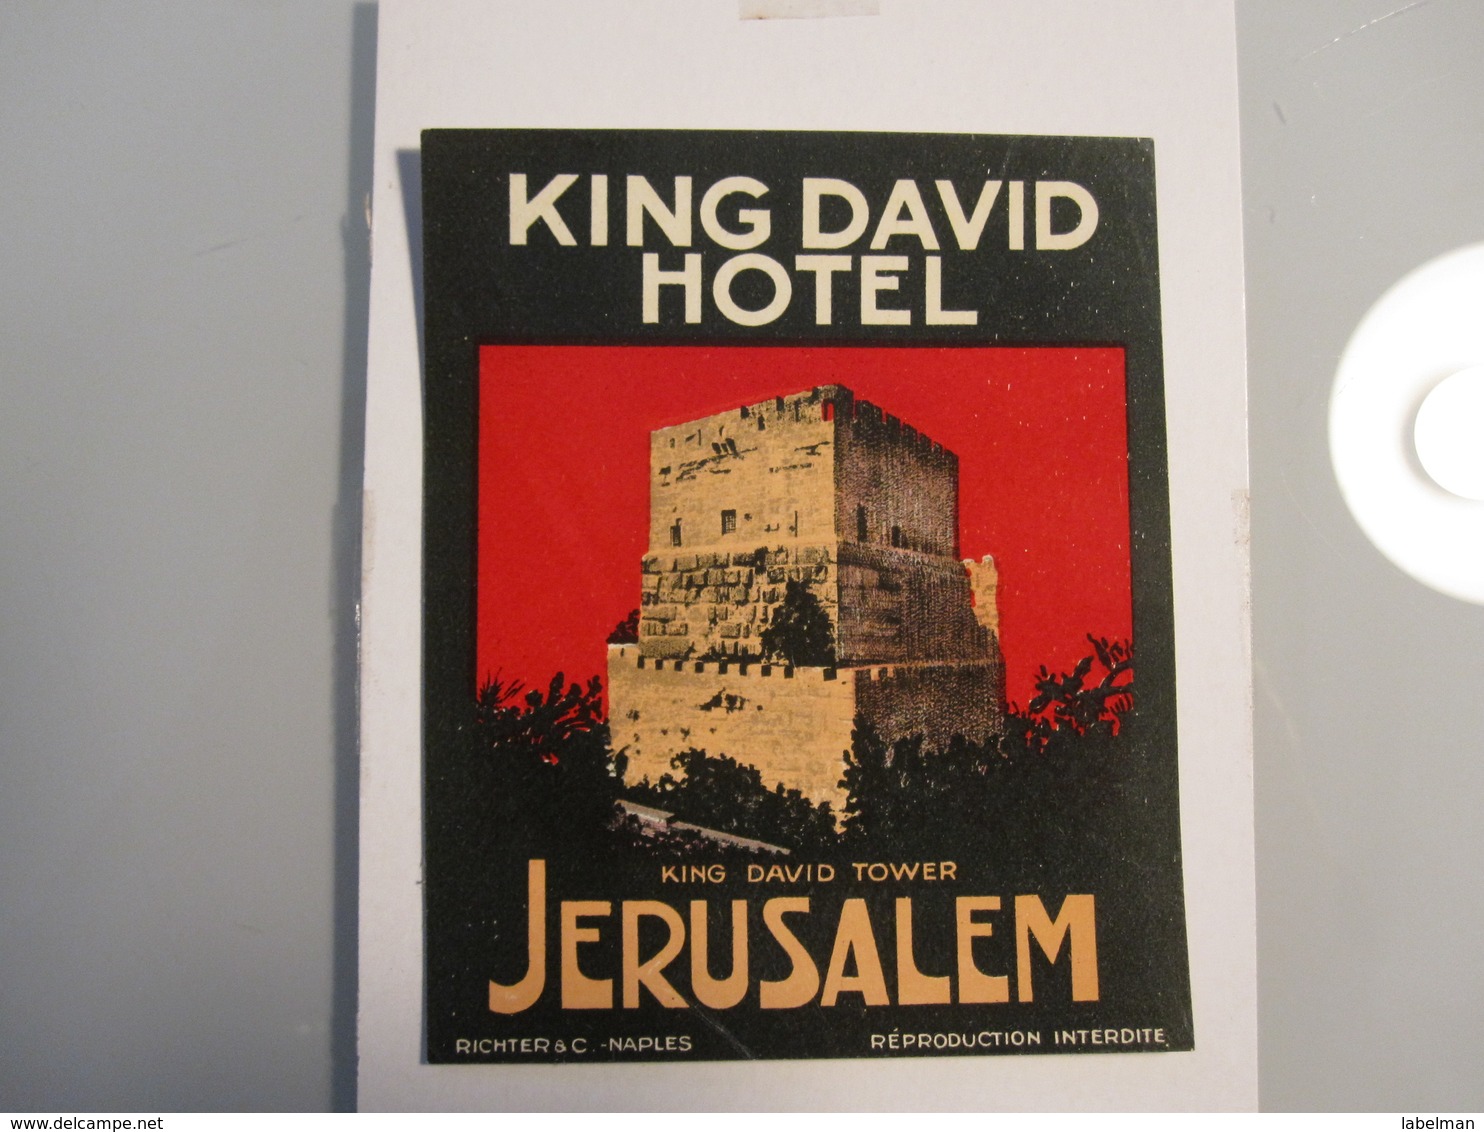 HOTEL MOTEL PENSION KING DAVID JERUSALEM PALESTINE ISRAEL TAG STICKER DECAL LUGGAGE LABEL ETIQUETTE AUFKLEBER - Hotelaufkleber